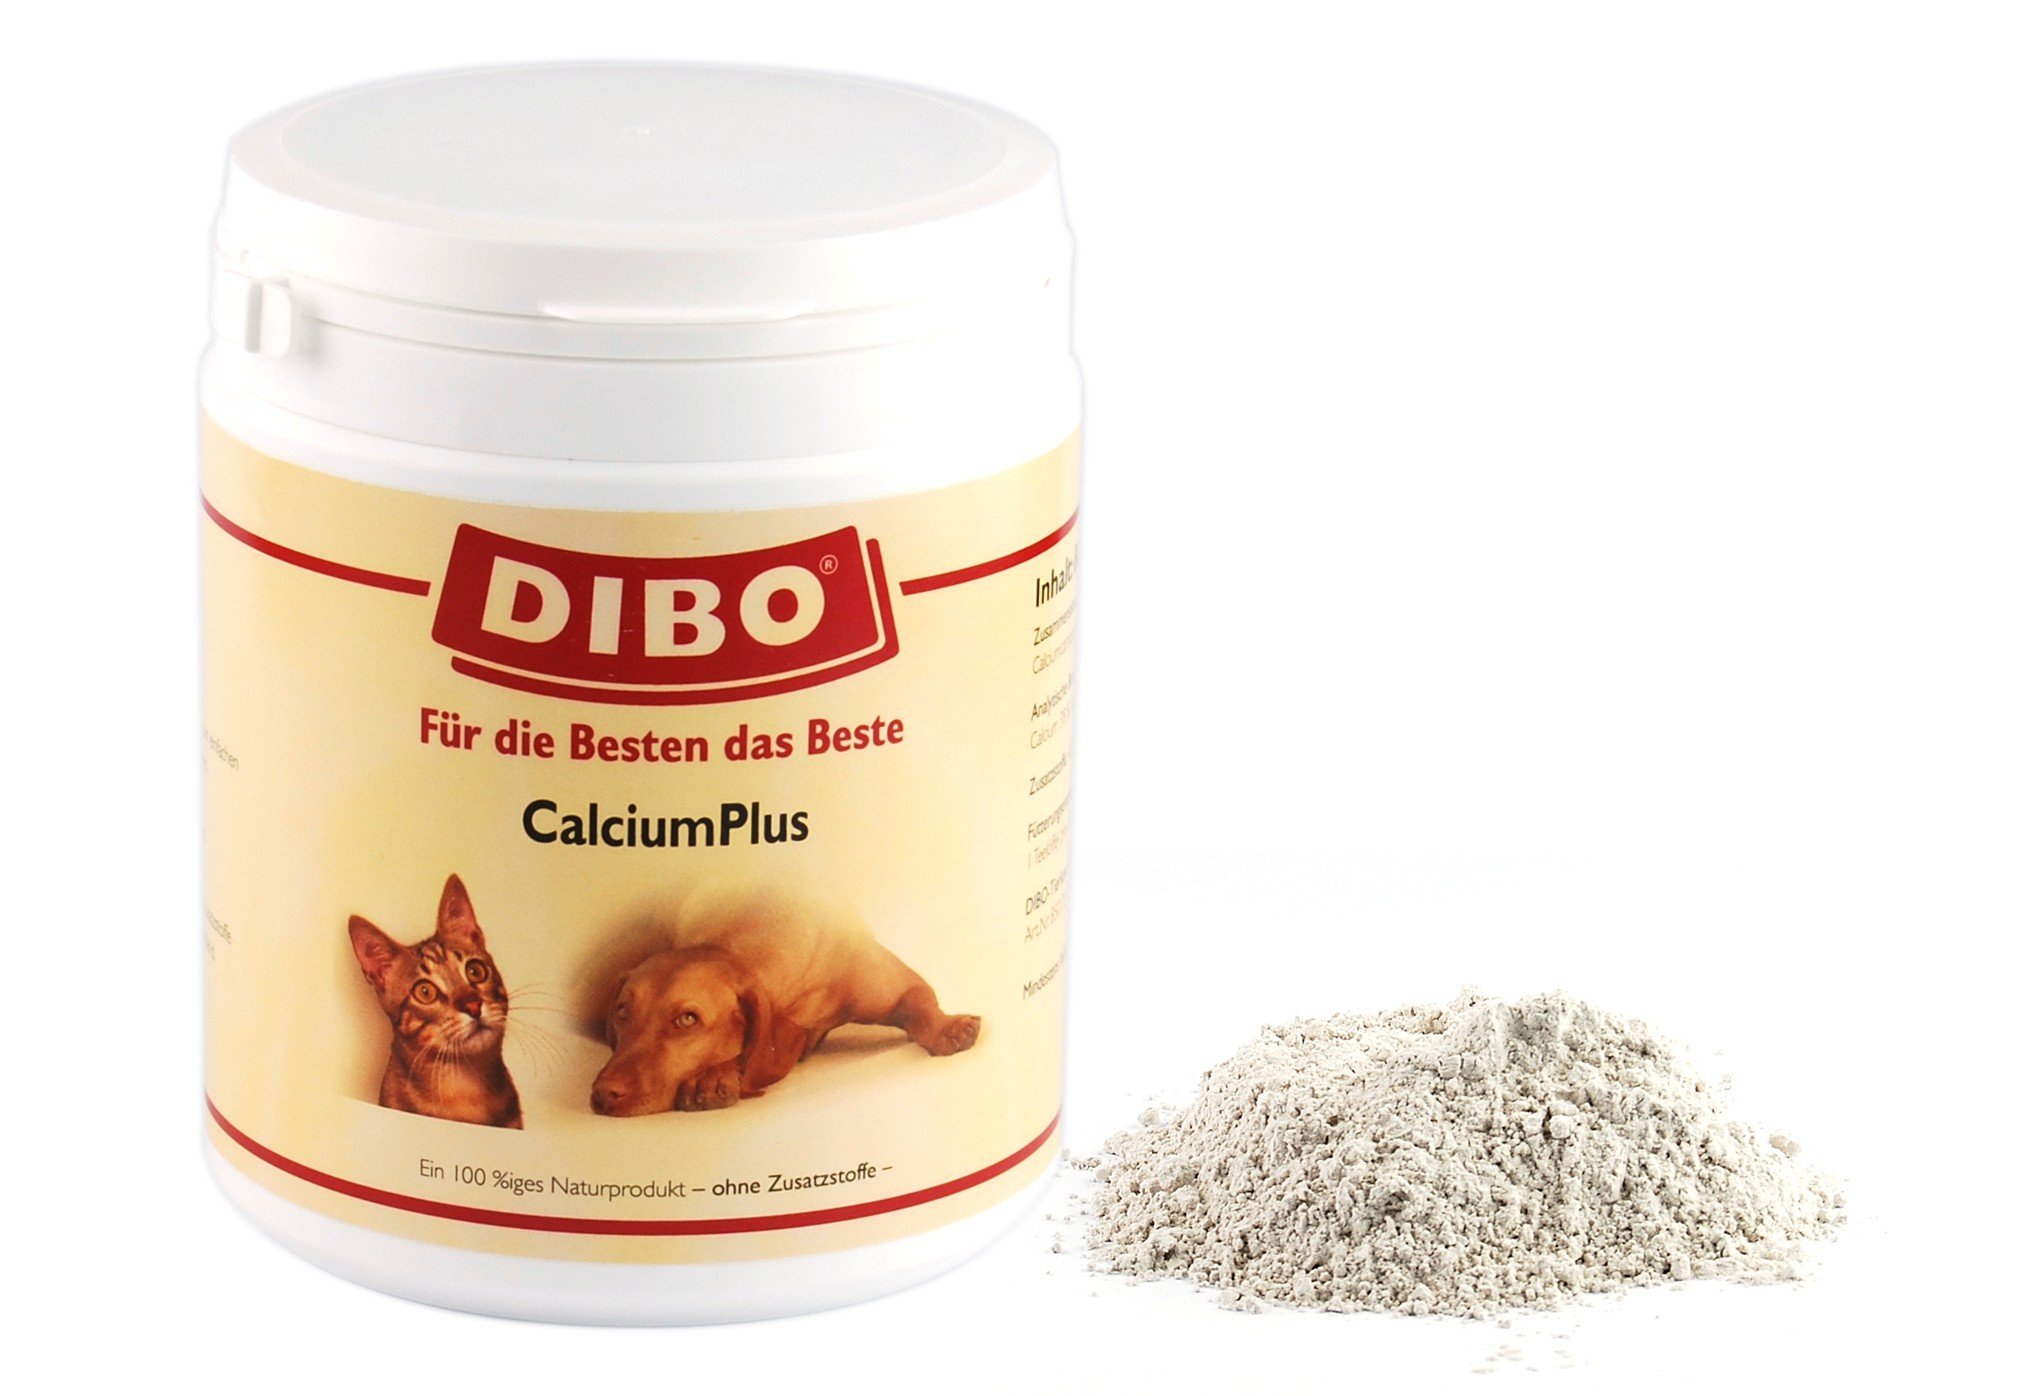 DIBO Calcium Plus, 800g-Dose